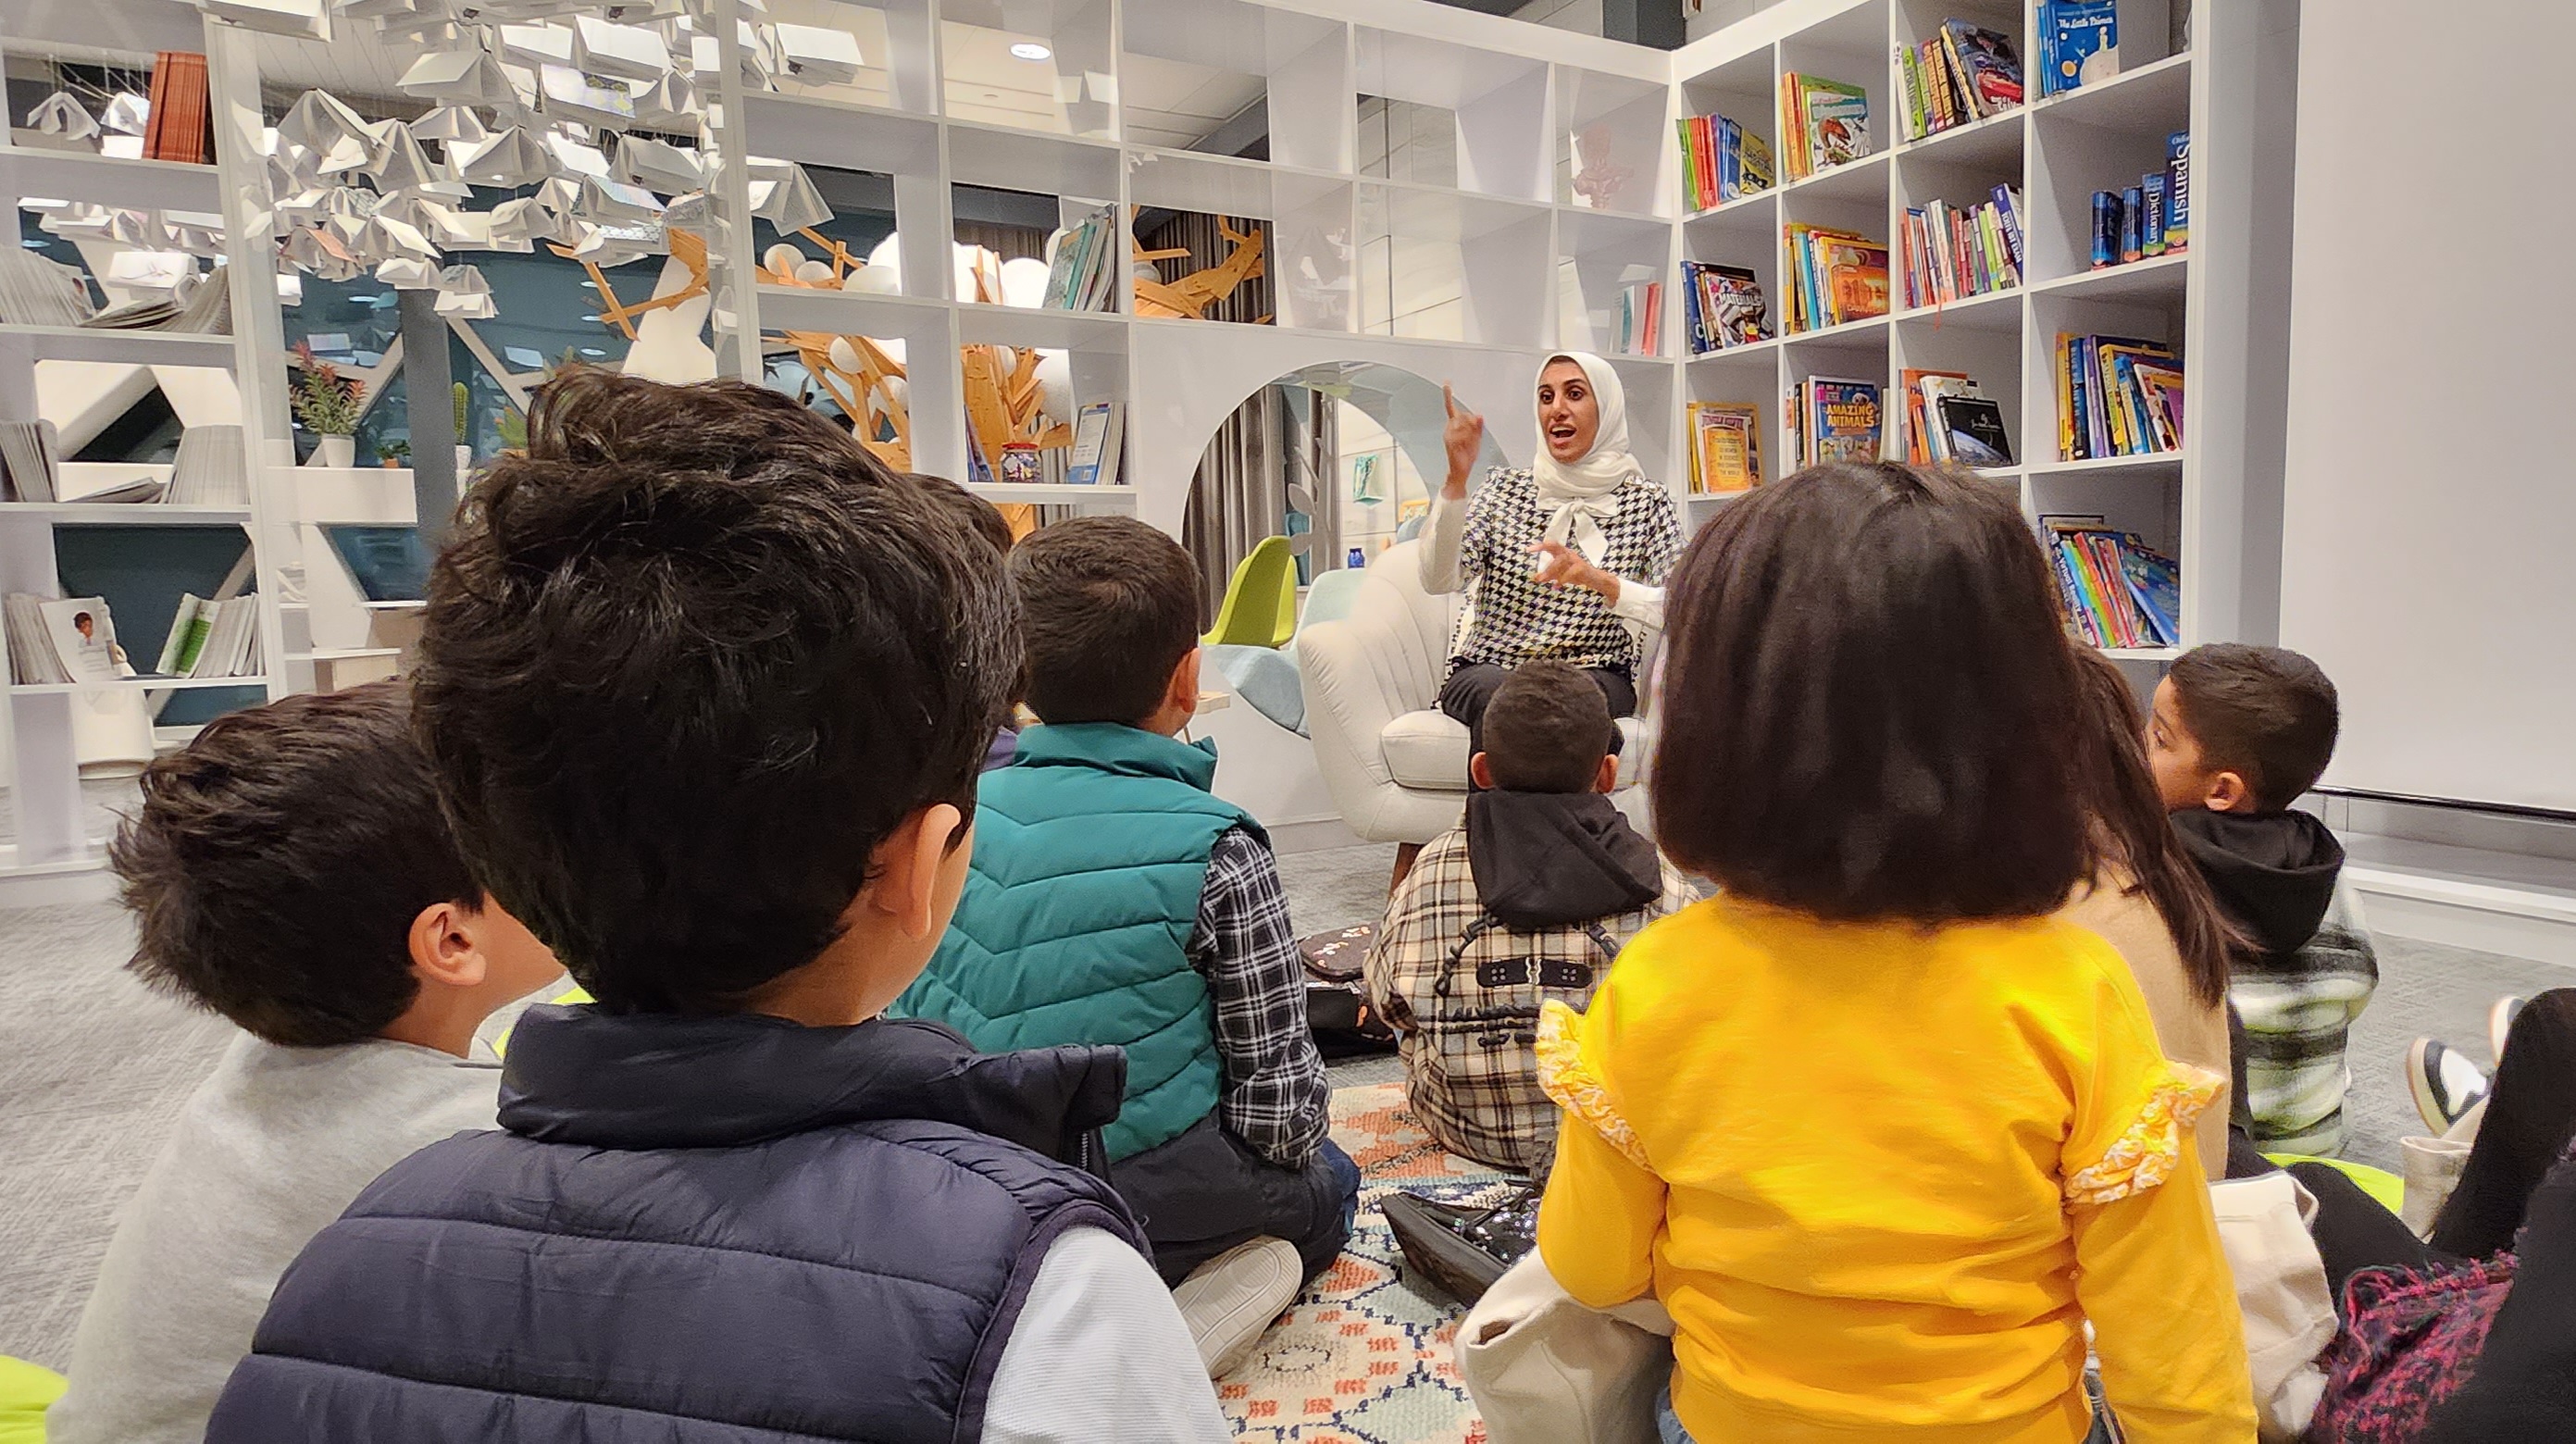 الروائية جهان علي تقدم للأطفال قصة تشويقية بعنوان "مغامرة حمود وصقور"